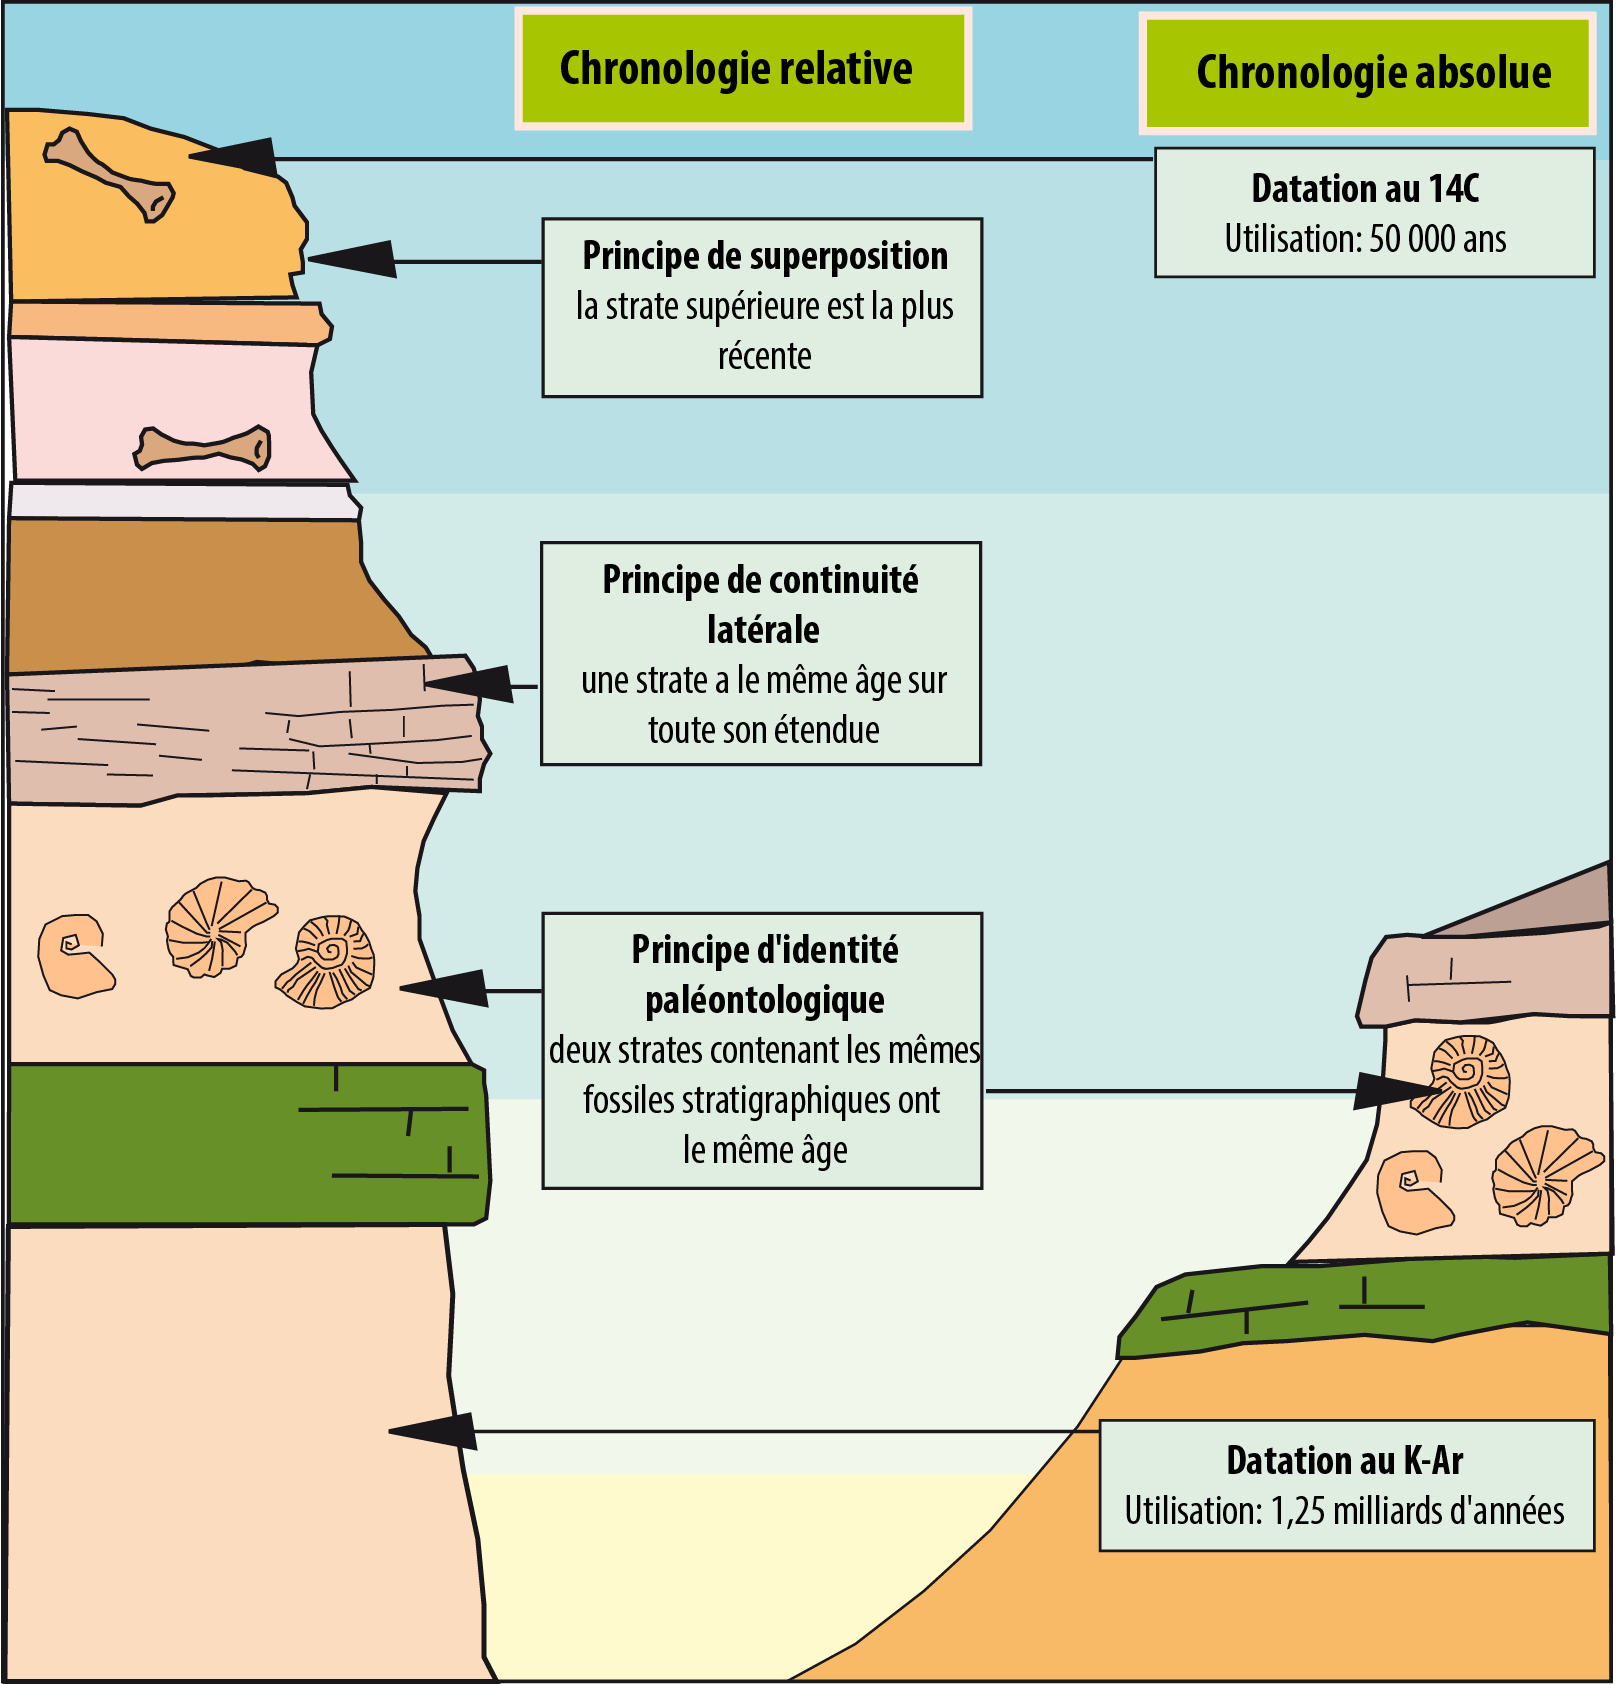 Diagramma che elenca i diversi metodi di datazione assoluta e relativa dei fossili.